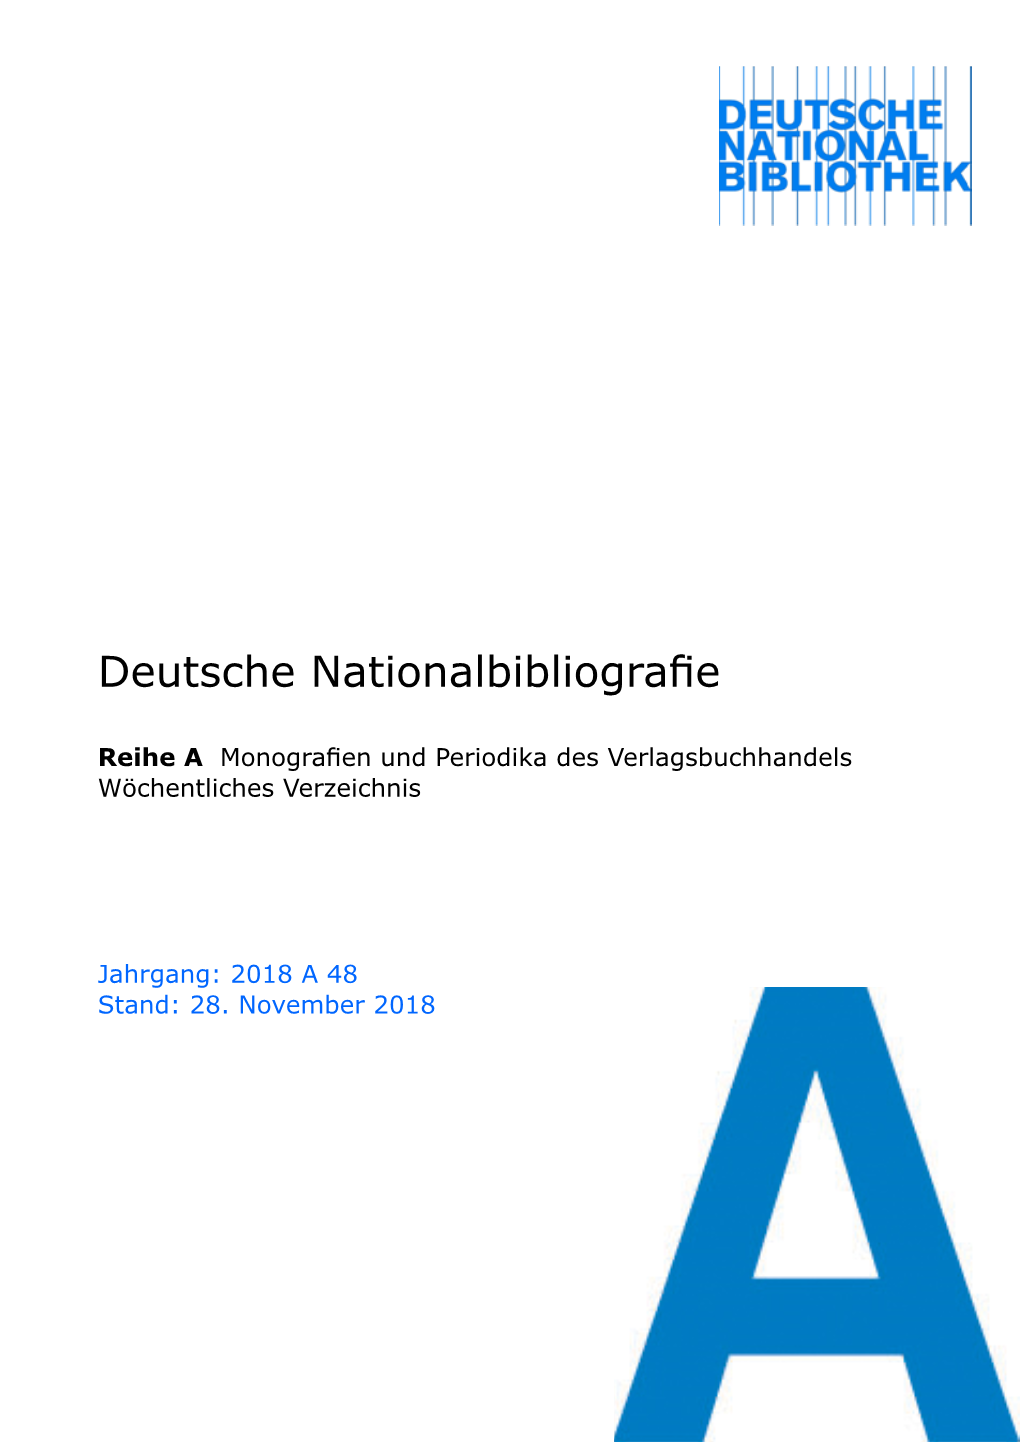 Deutsche Nationalbibliografie 2018 a 48